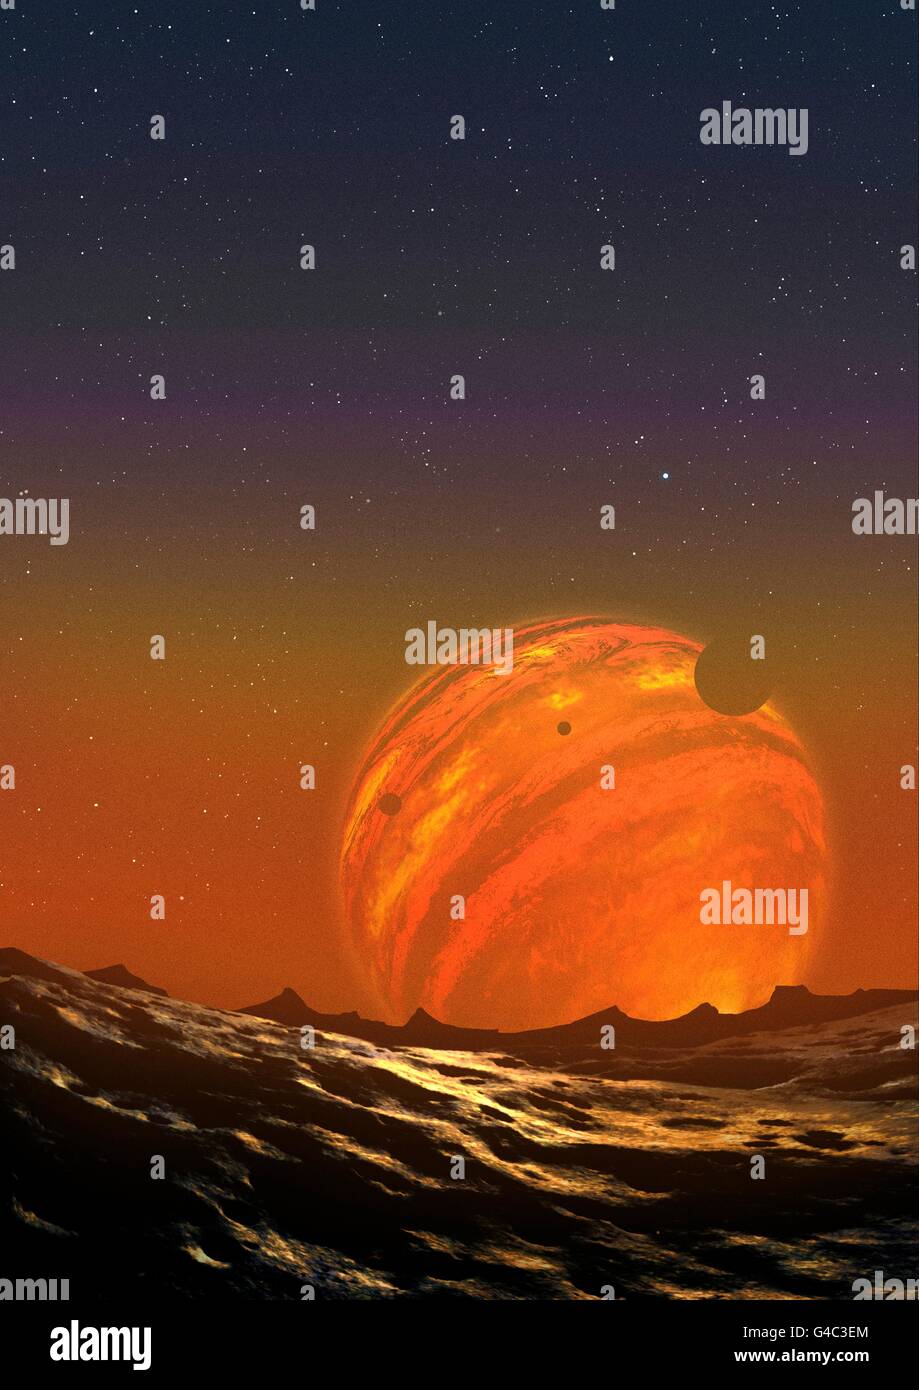 Abbildung eines schwebenden Planeten. PSO-J318.5-22 ist ein Planet im Sternbild Pictor, rund 80 Lichtjahre von der Erde. Es ist seltsam, dass im Gegensatz zu den meisten extrasolaren Objekten, es nicht scheint, in einer Umlaufbahn um einen Stern zu sein - es ist eine frei schwebenden Planeten Messen rund 6,5 Mal die Masse des Planeten Jupiter. Frei schwebenden Planeten wie diese aus, von einer protoplanetaren Scheibe Abgaben ausgeworfen ergeben auf Gravitation Störungen aus anderen massiven Objekt. Dieser Planet hat Wolkenbänder wie diejenigen des Gases riesigen Jupiter, sondern seine Wolken Temperaturen von mehr als 800 Celsius haben ähnlich Stockfoto